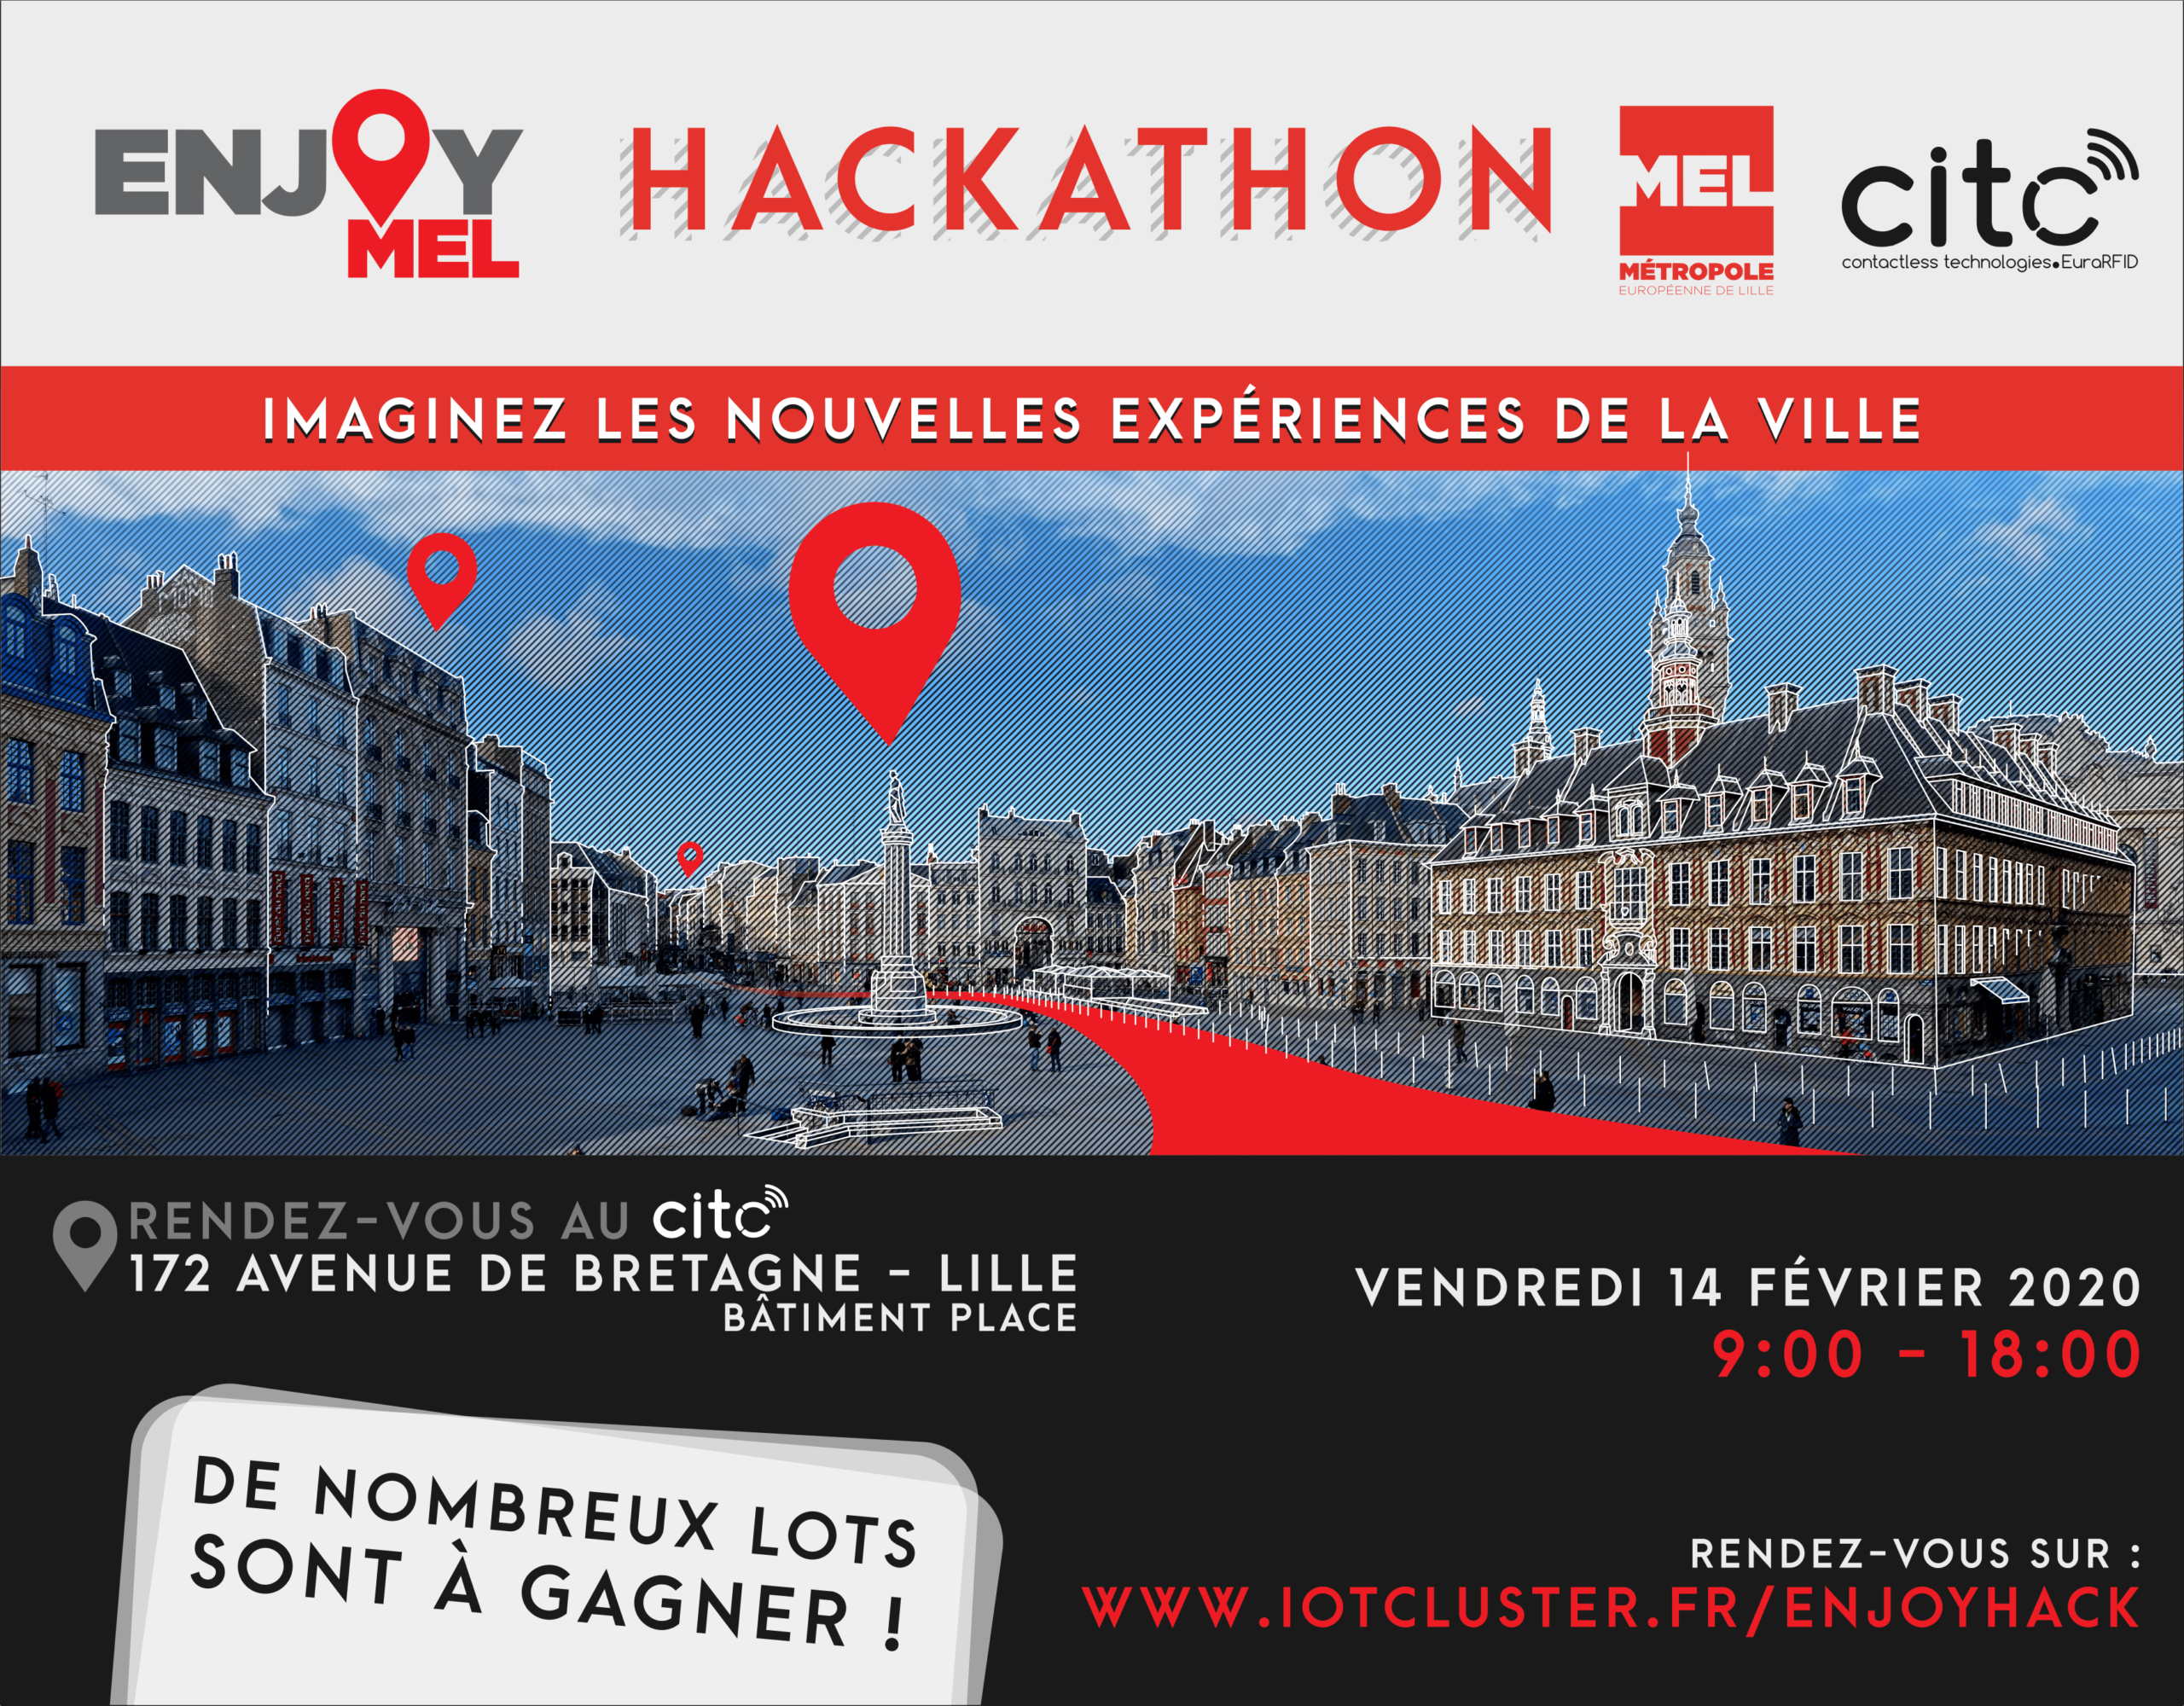 Hackathon EnjoyMEL : Imaginez les nouvelles expériences de la ville